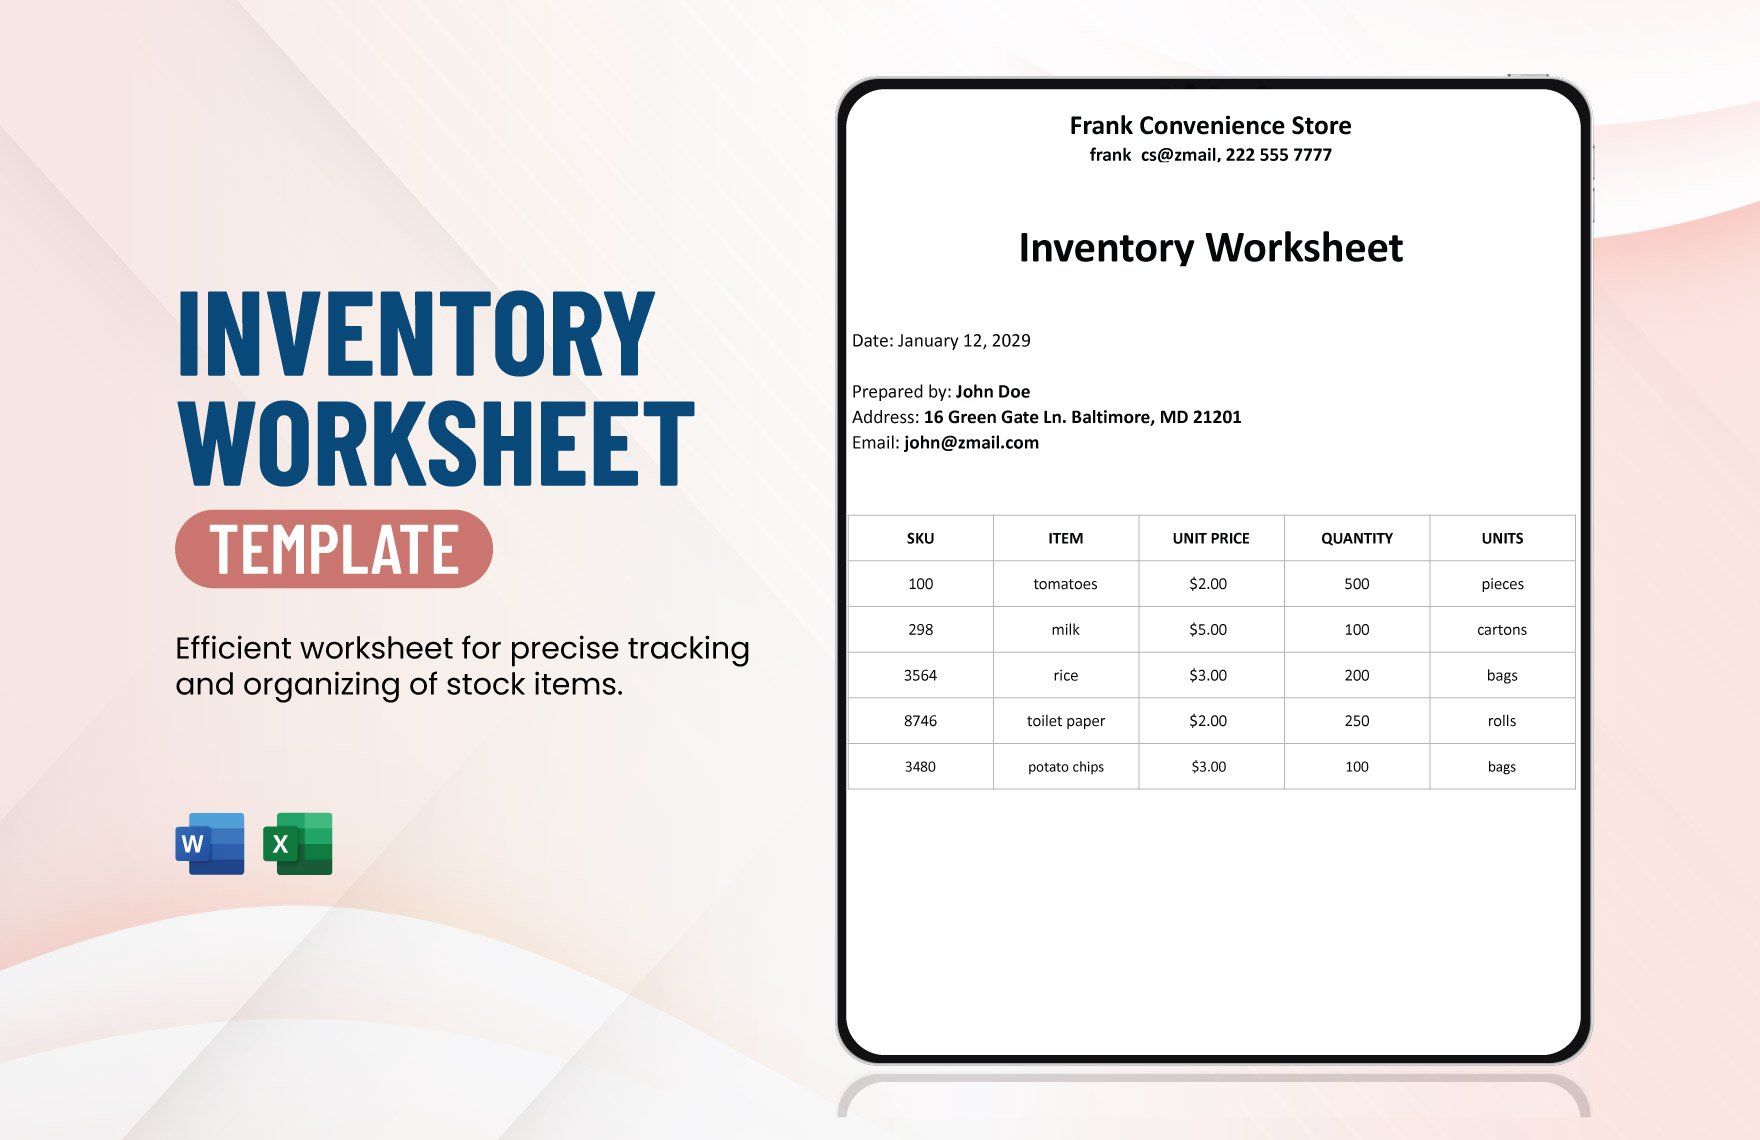 Inventory Worksheet Template in Word, Excel